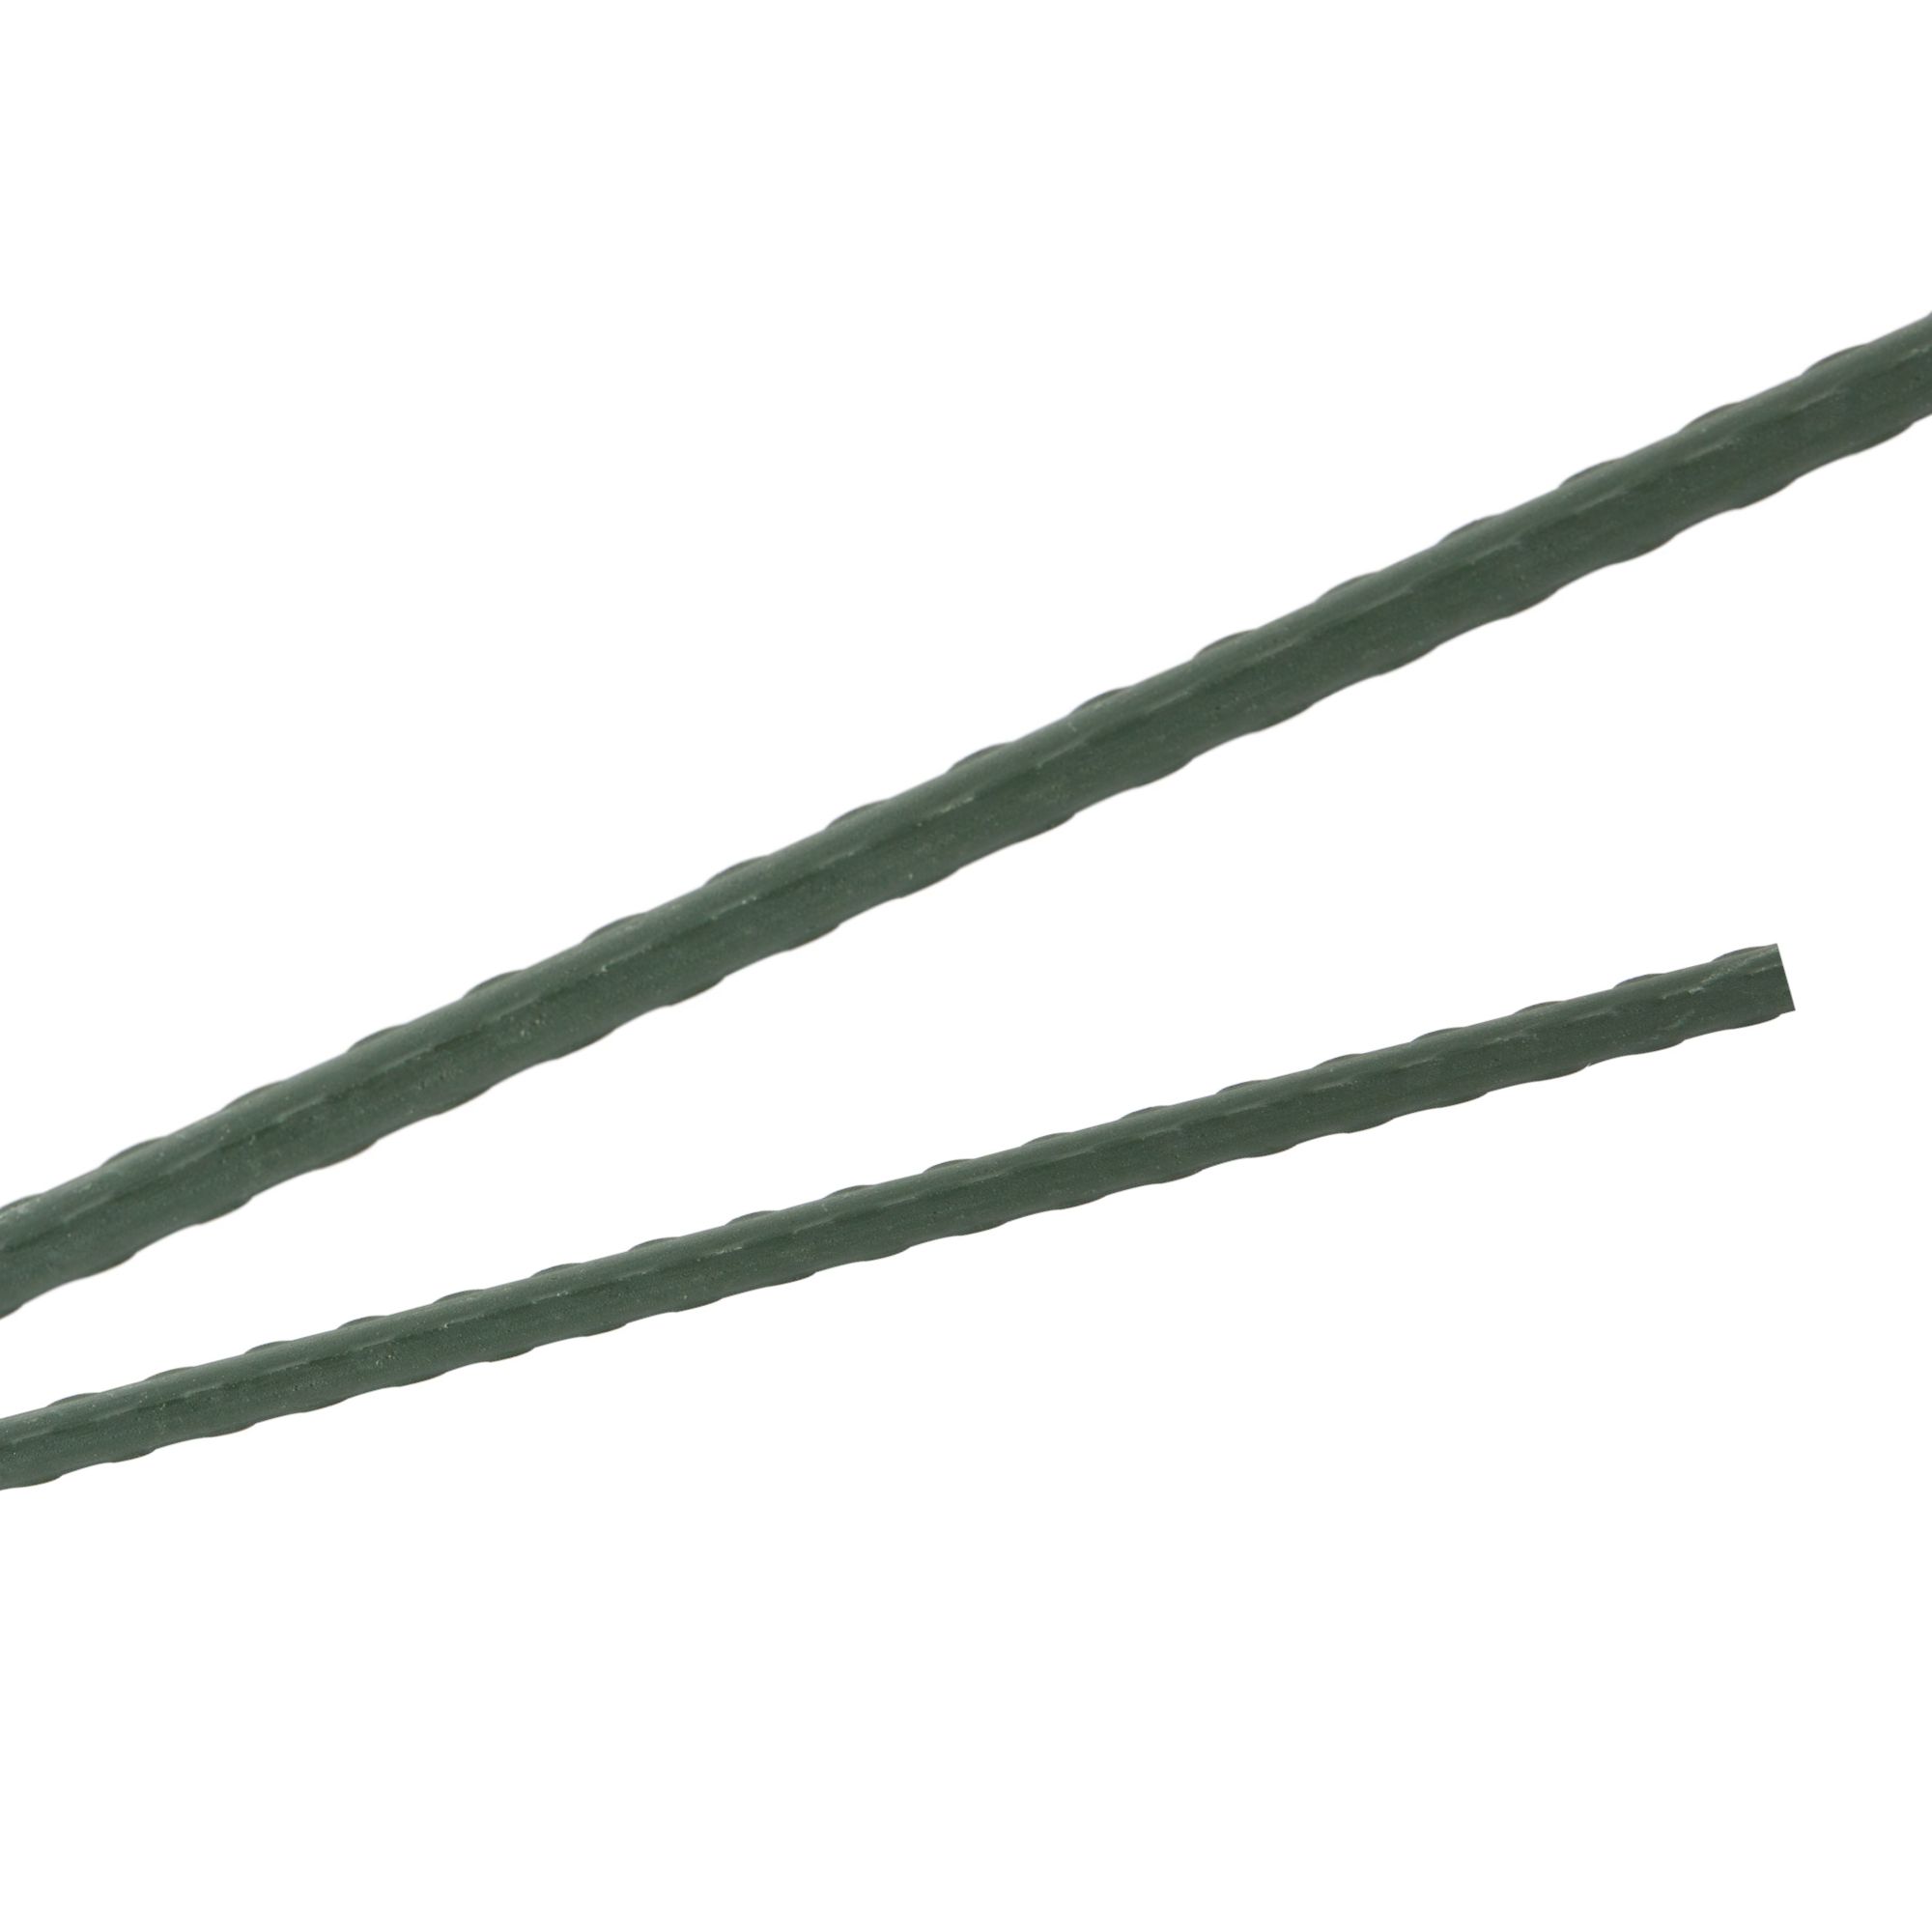 Tyč podpěrná, 8mm, 90cm, kov+PVC, zelená 0.052000 Kg GIGA Sklad20 211783 101